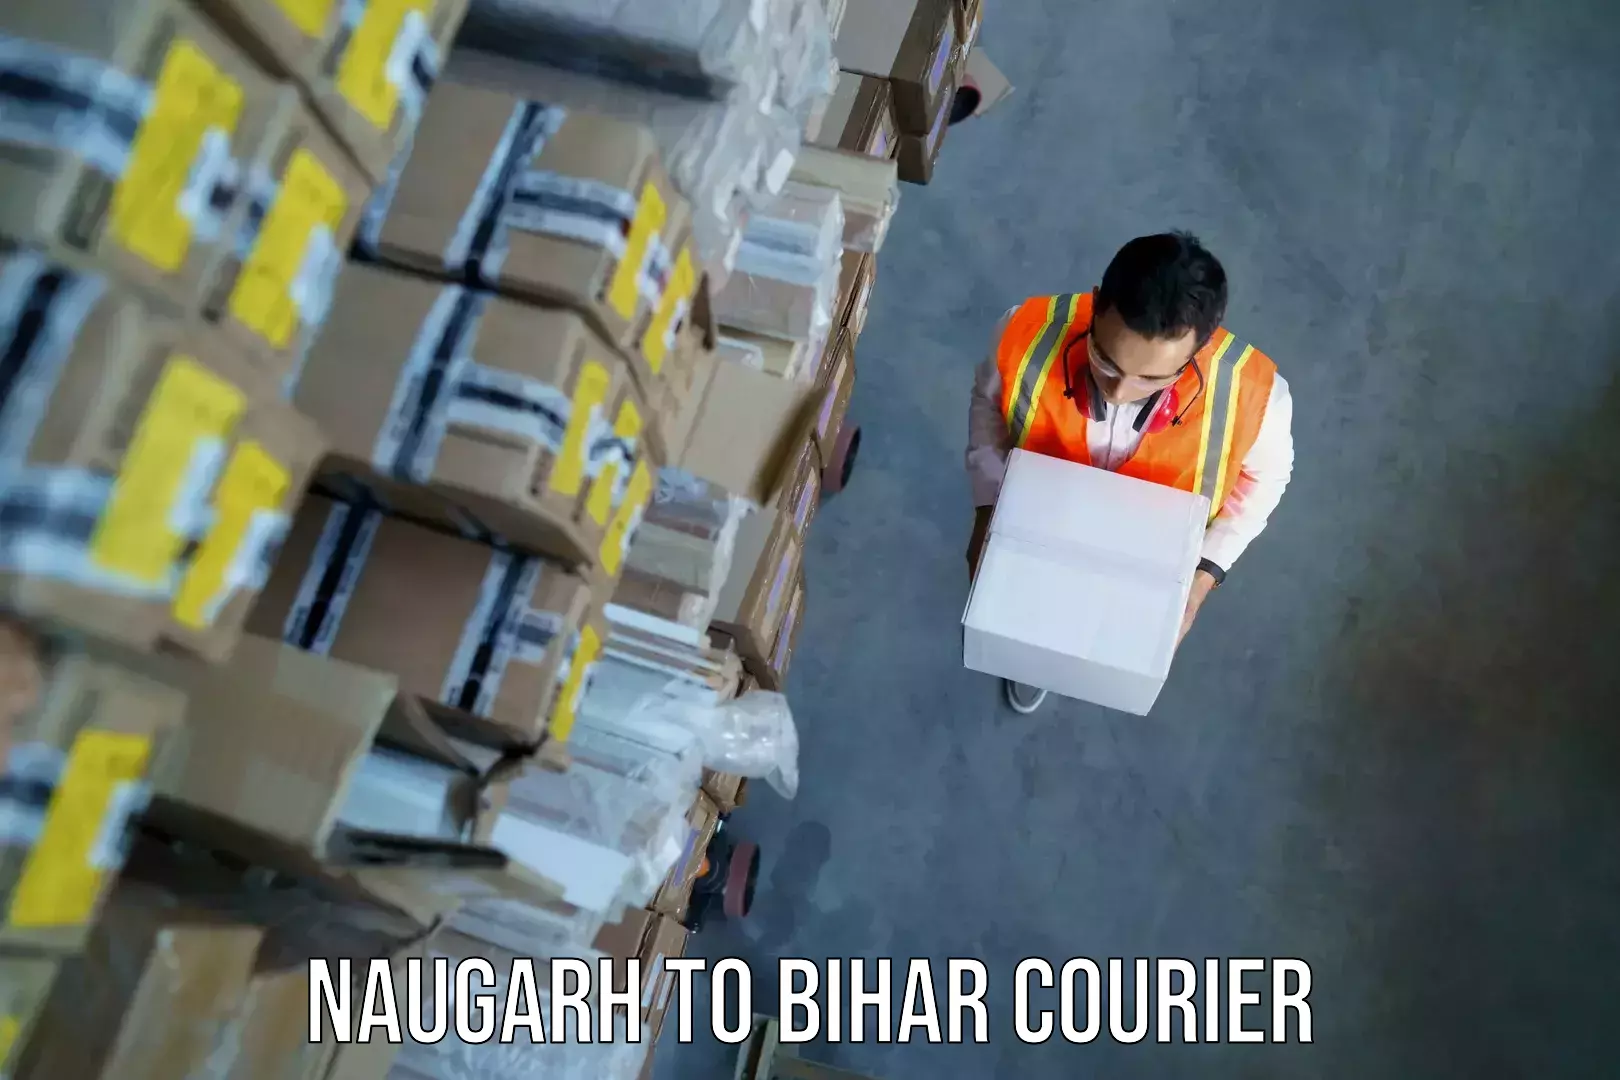 Baggage transport scheduler Naugarh to Bikramganj